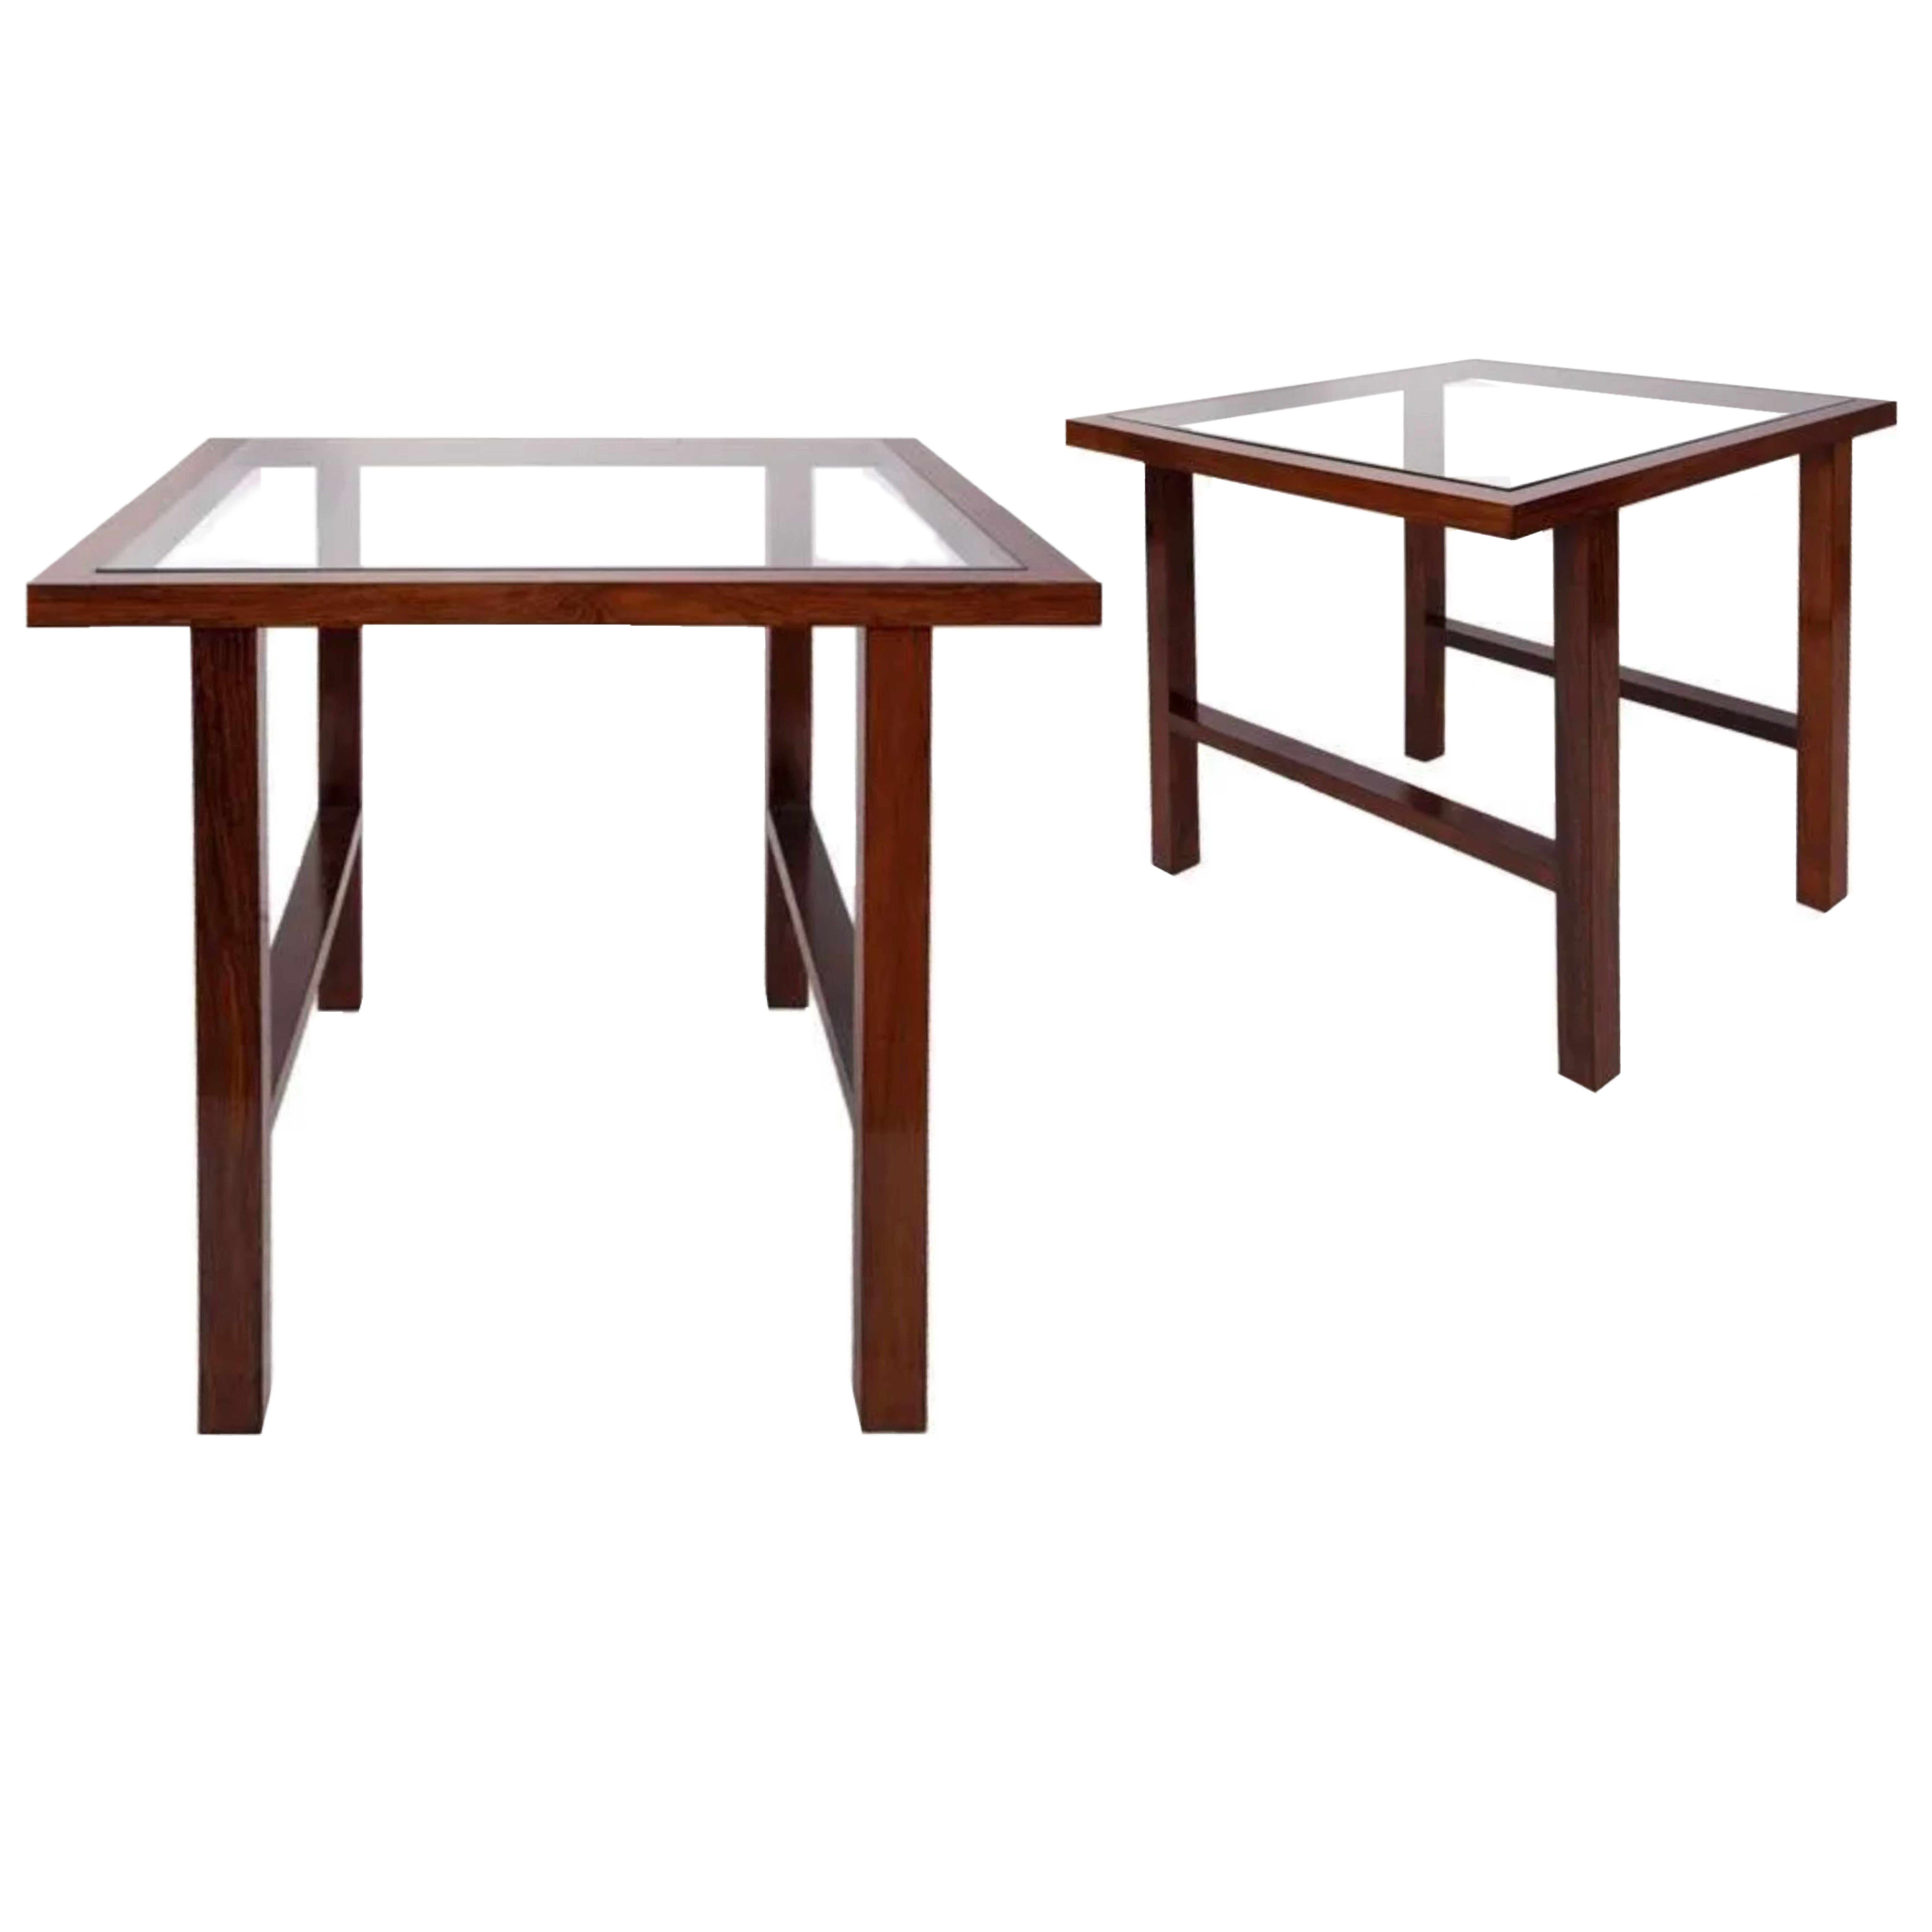 Table d'appoint brésilienne Branco & Preto de style moderne du milieu du siècle avec plateau en verre dans un cadre en bois de Caviuna. 21.5